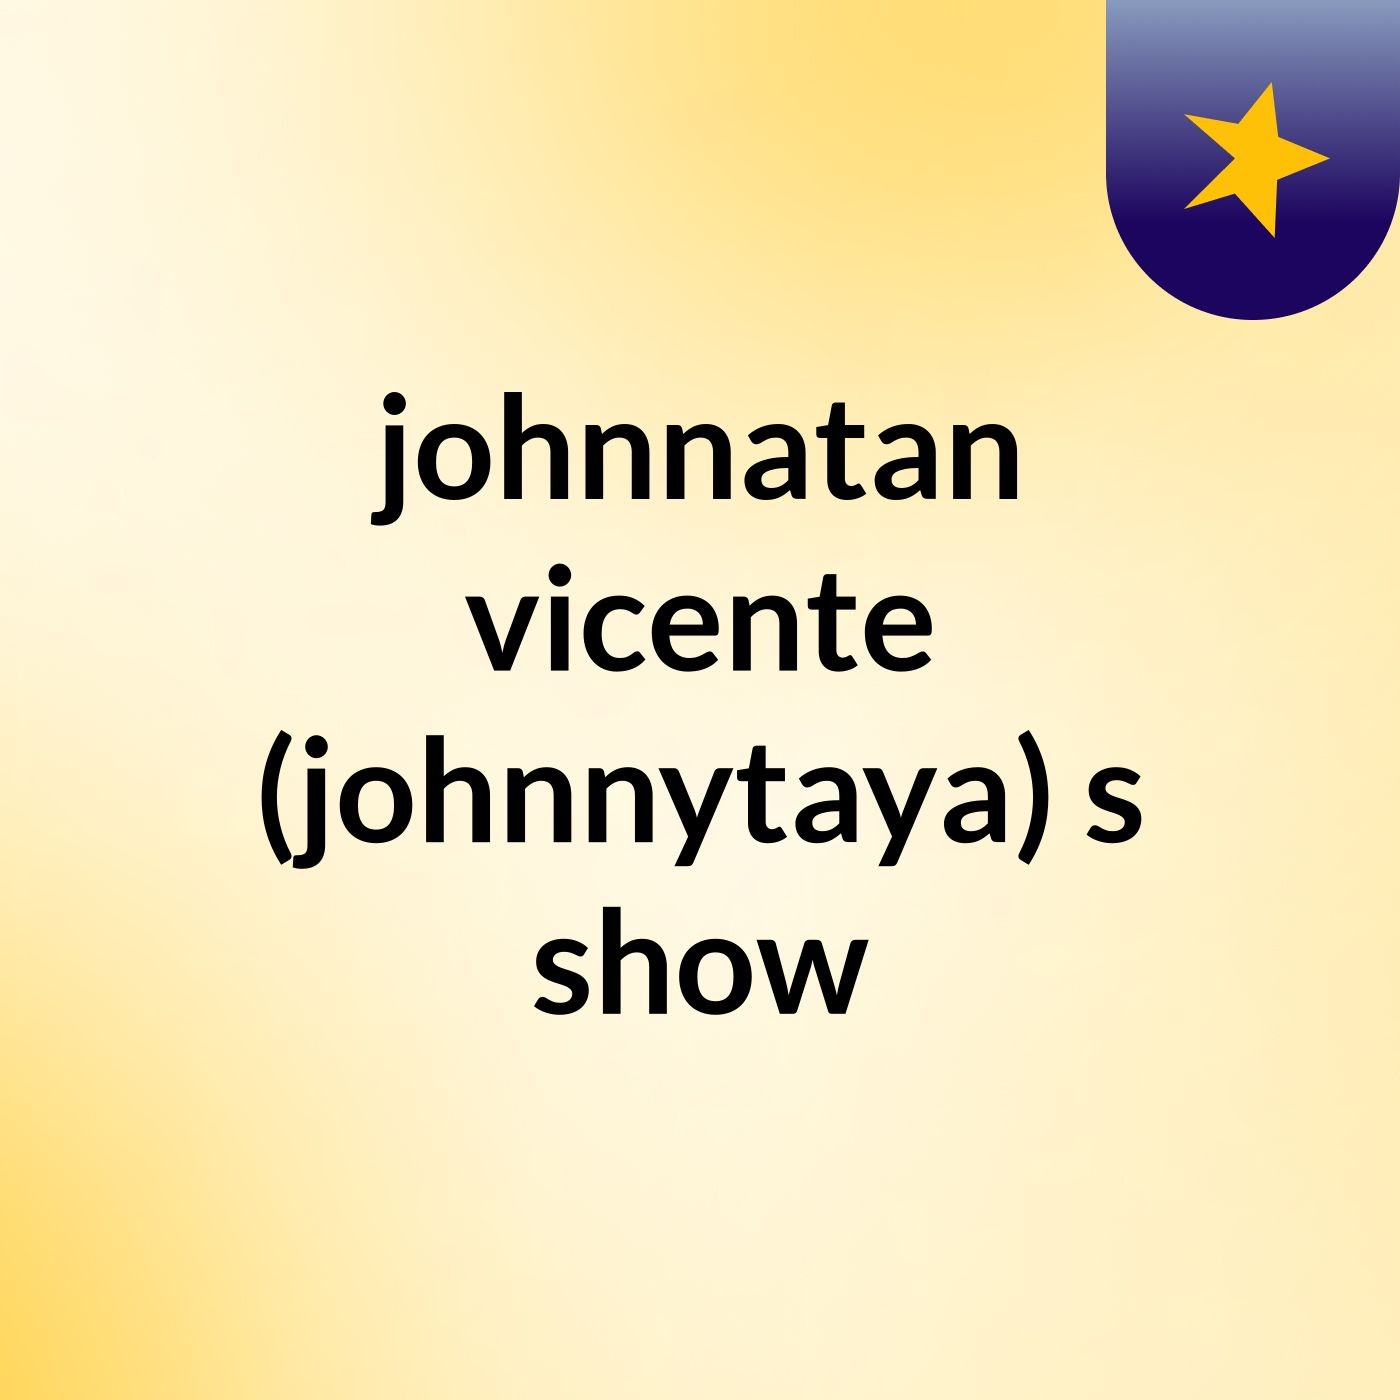 johnnatan vicente (johnnytaya)'s show